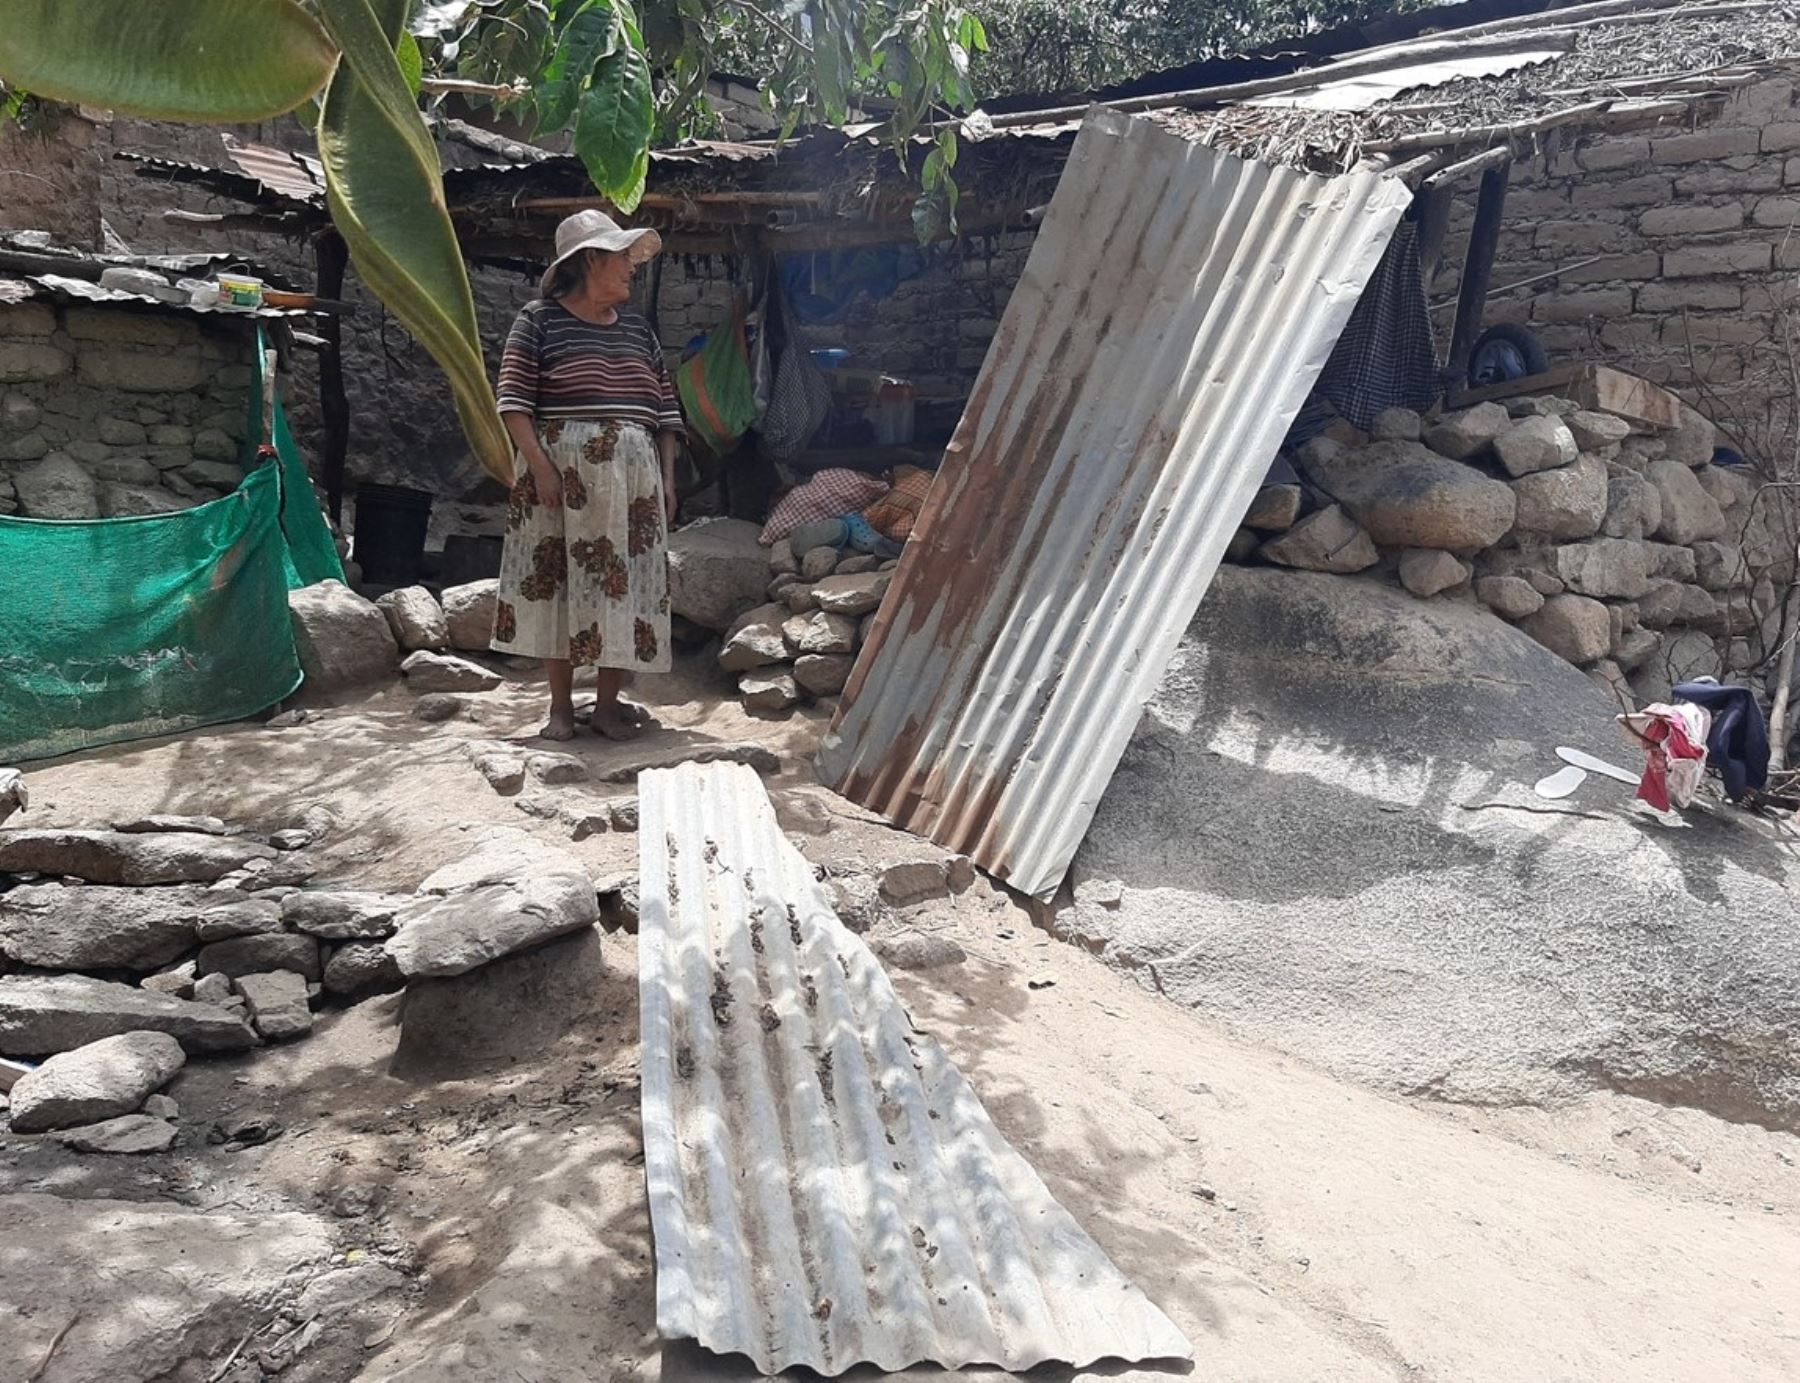 Vientos fuertes afectan a 12 viviendas de material rústico en provincia de Corongo, región Áncash.